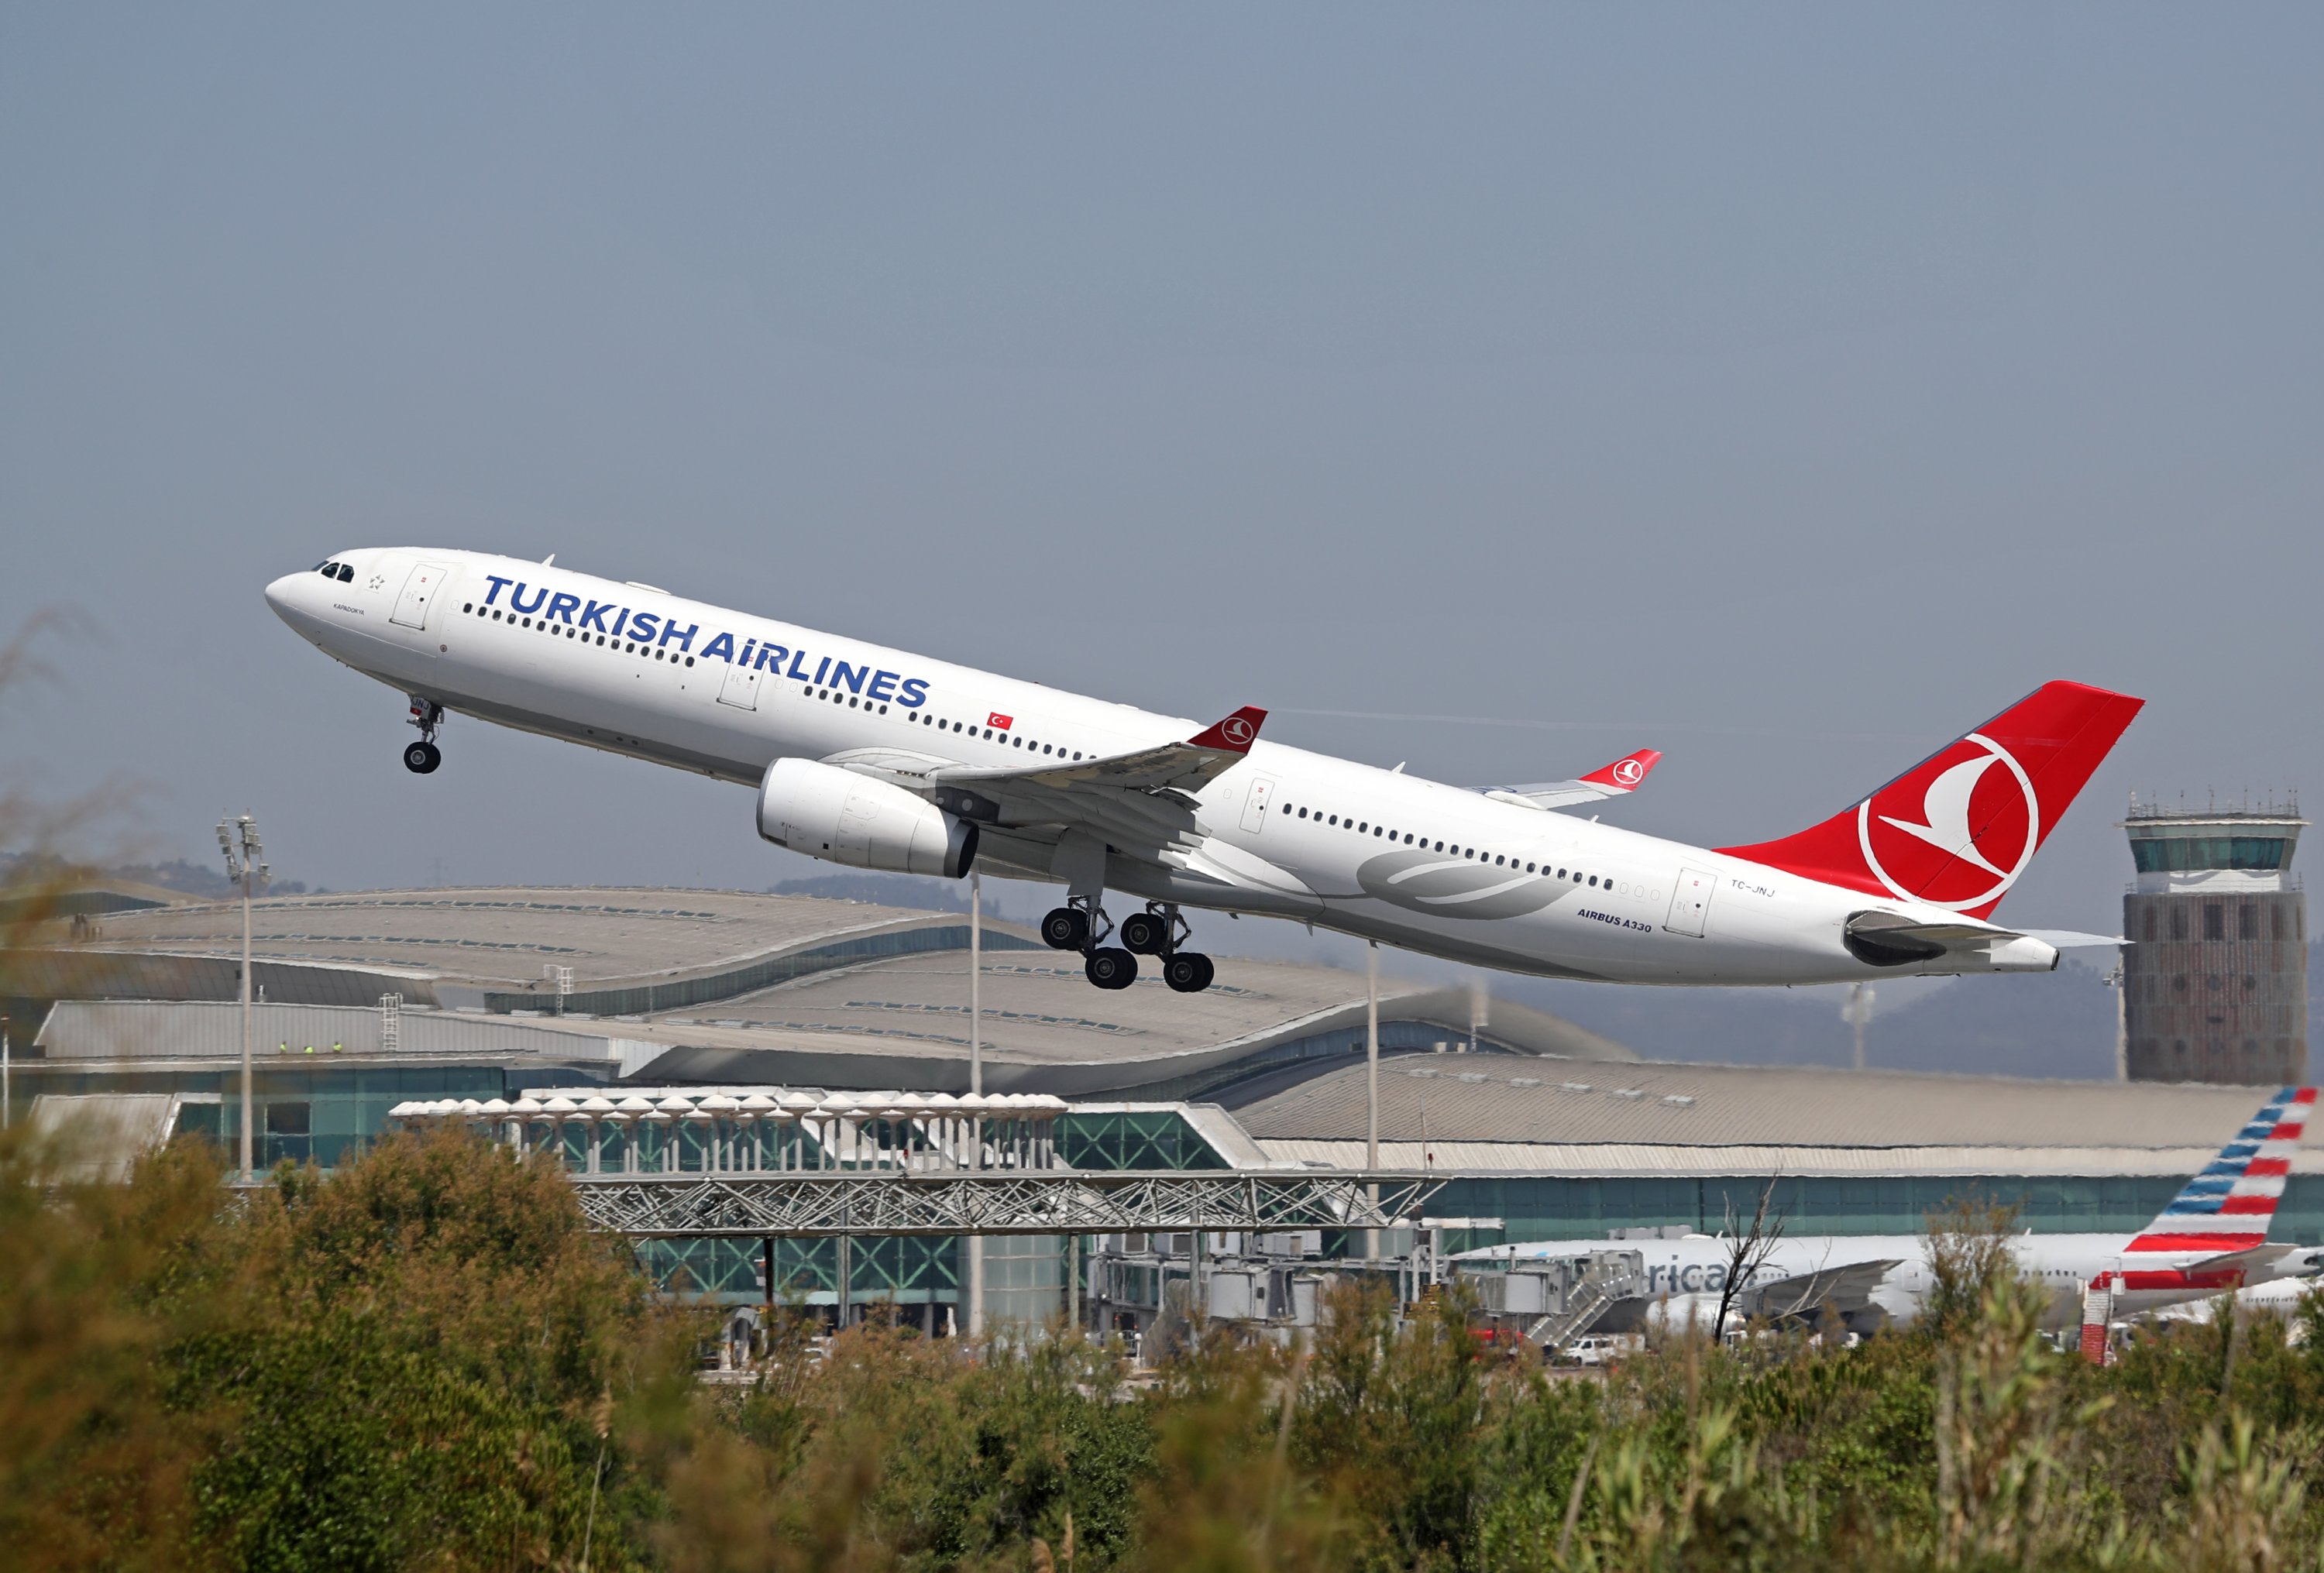 Туркиш эйрлайнс отзывы. Туркиш Airlines. Эйрлайнс. Компоновка a330 Turkish Airlines. Турки.